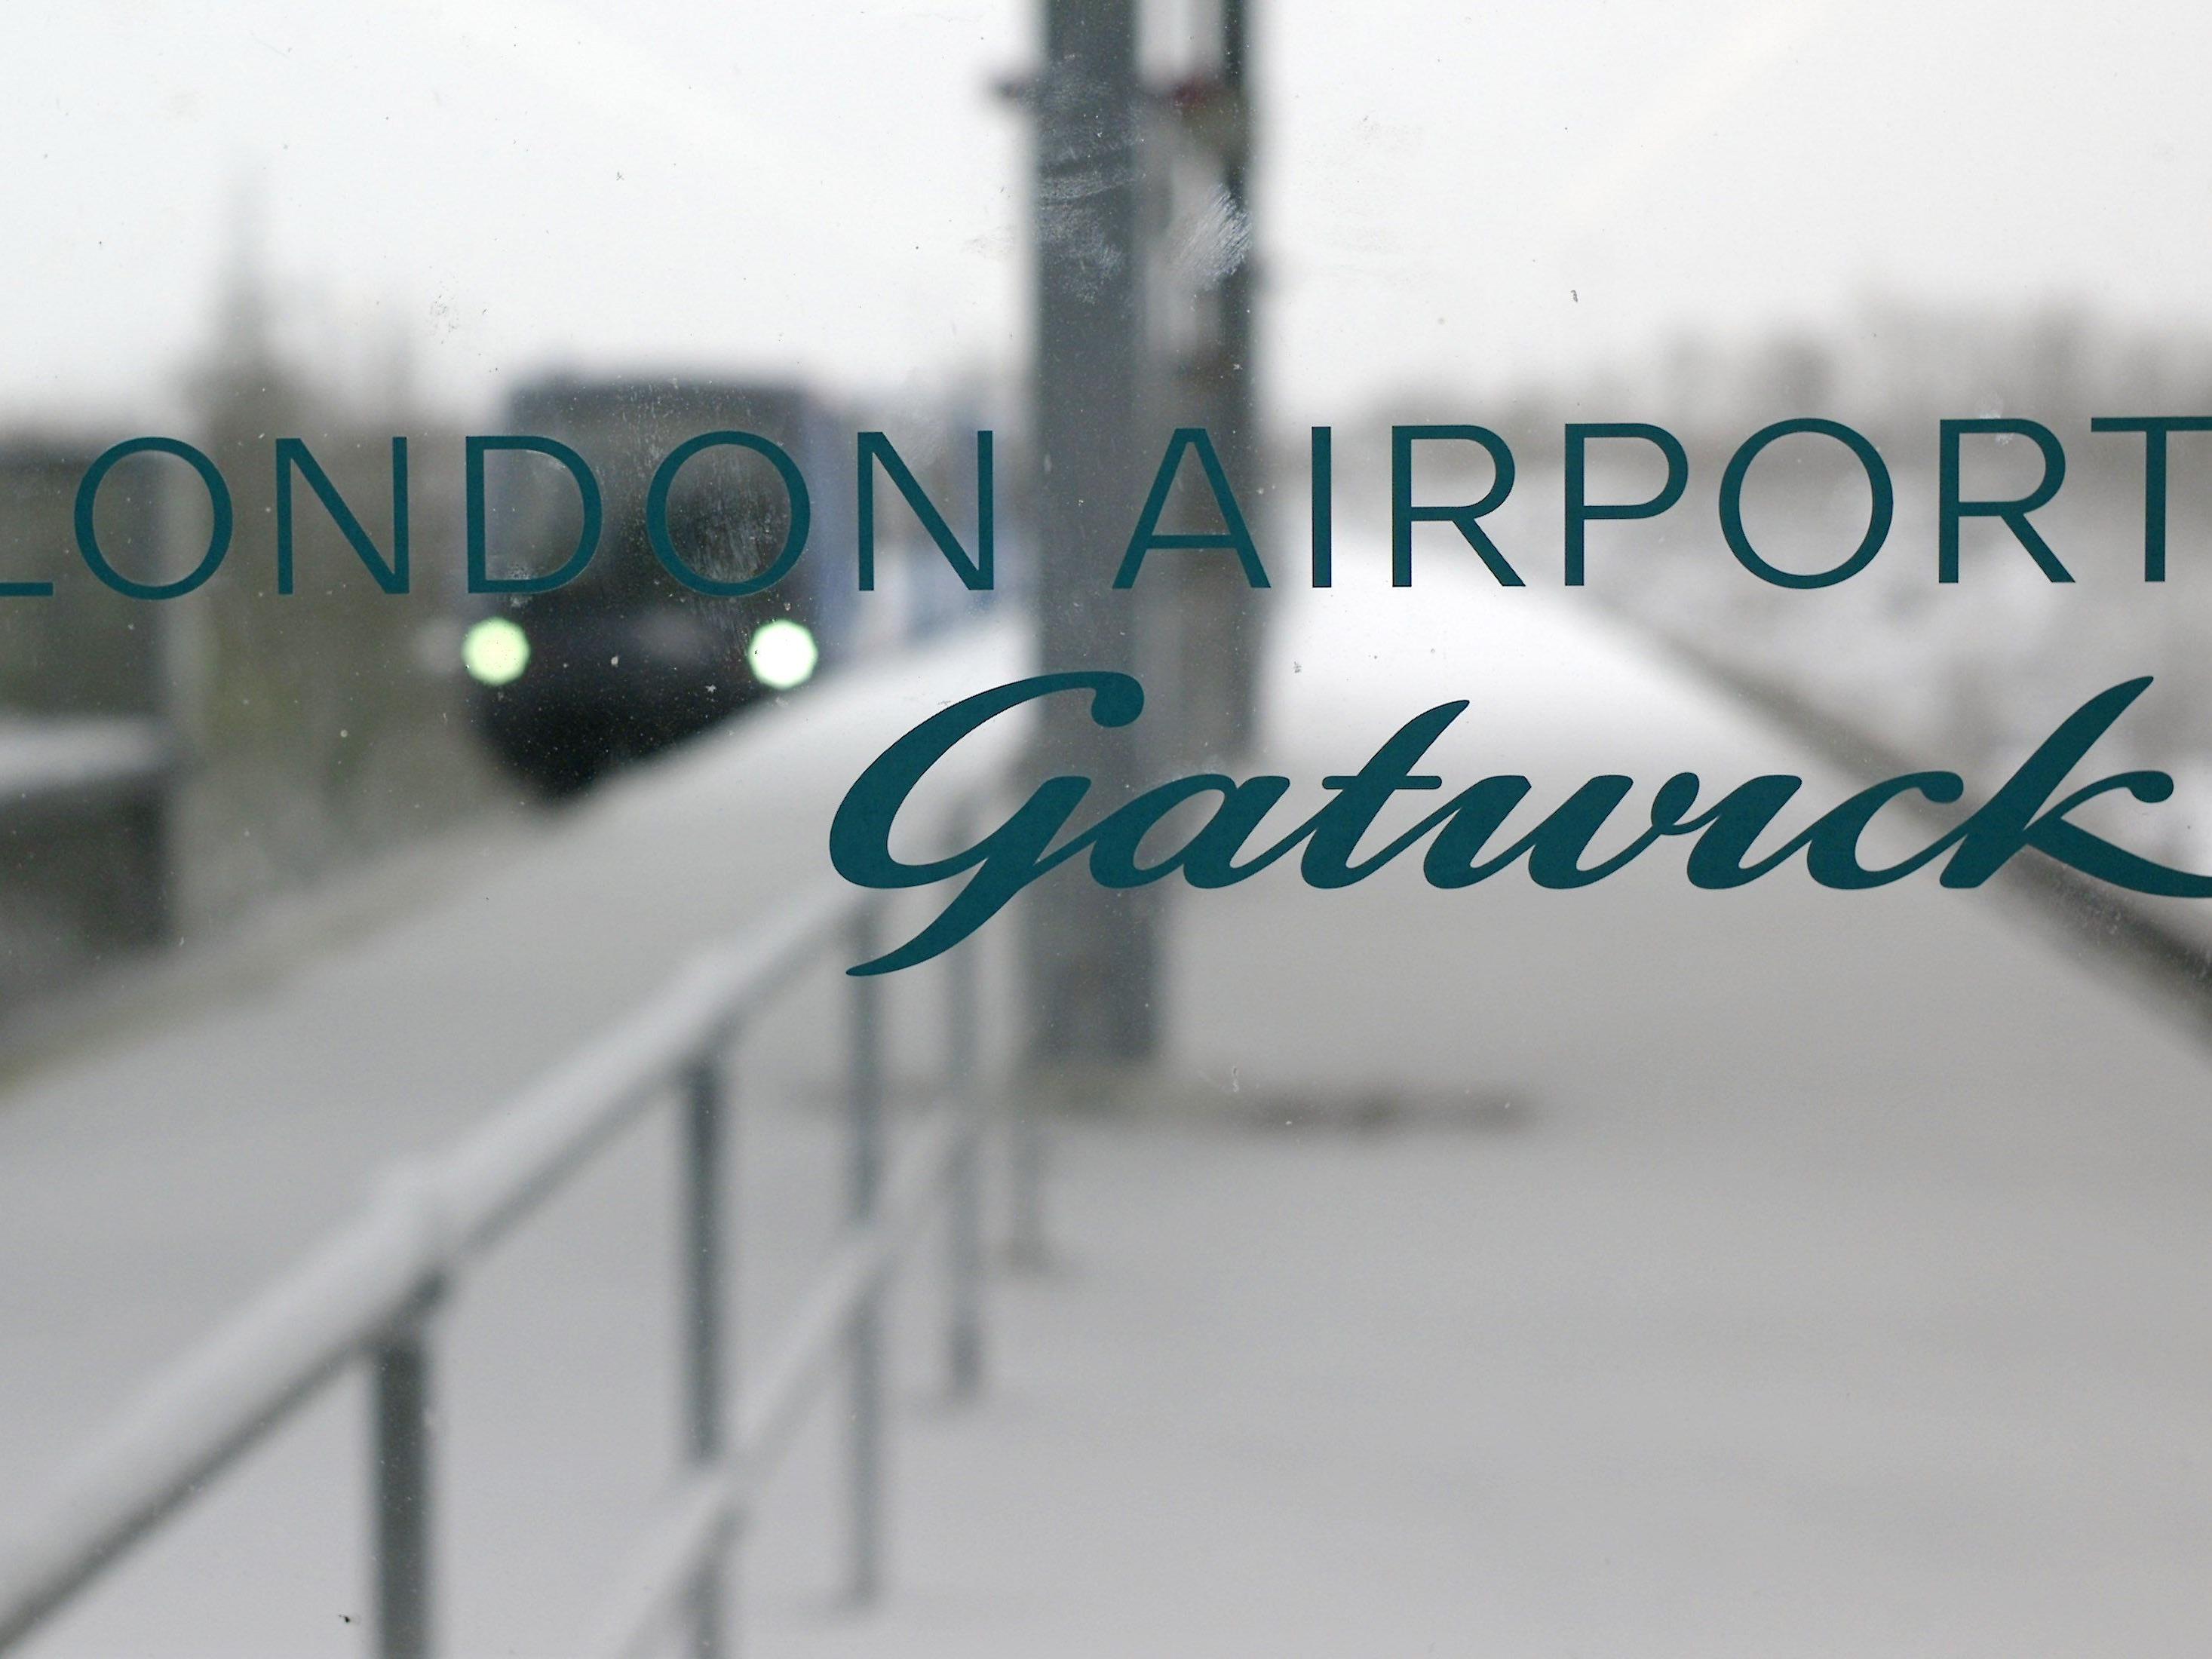 Am Samstag wurde der Nord-Terminal des Flughafens Gatwick evakuiert.